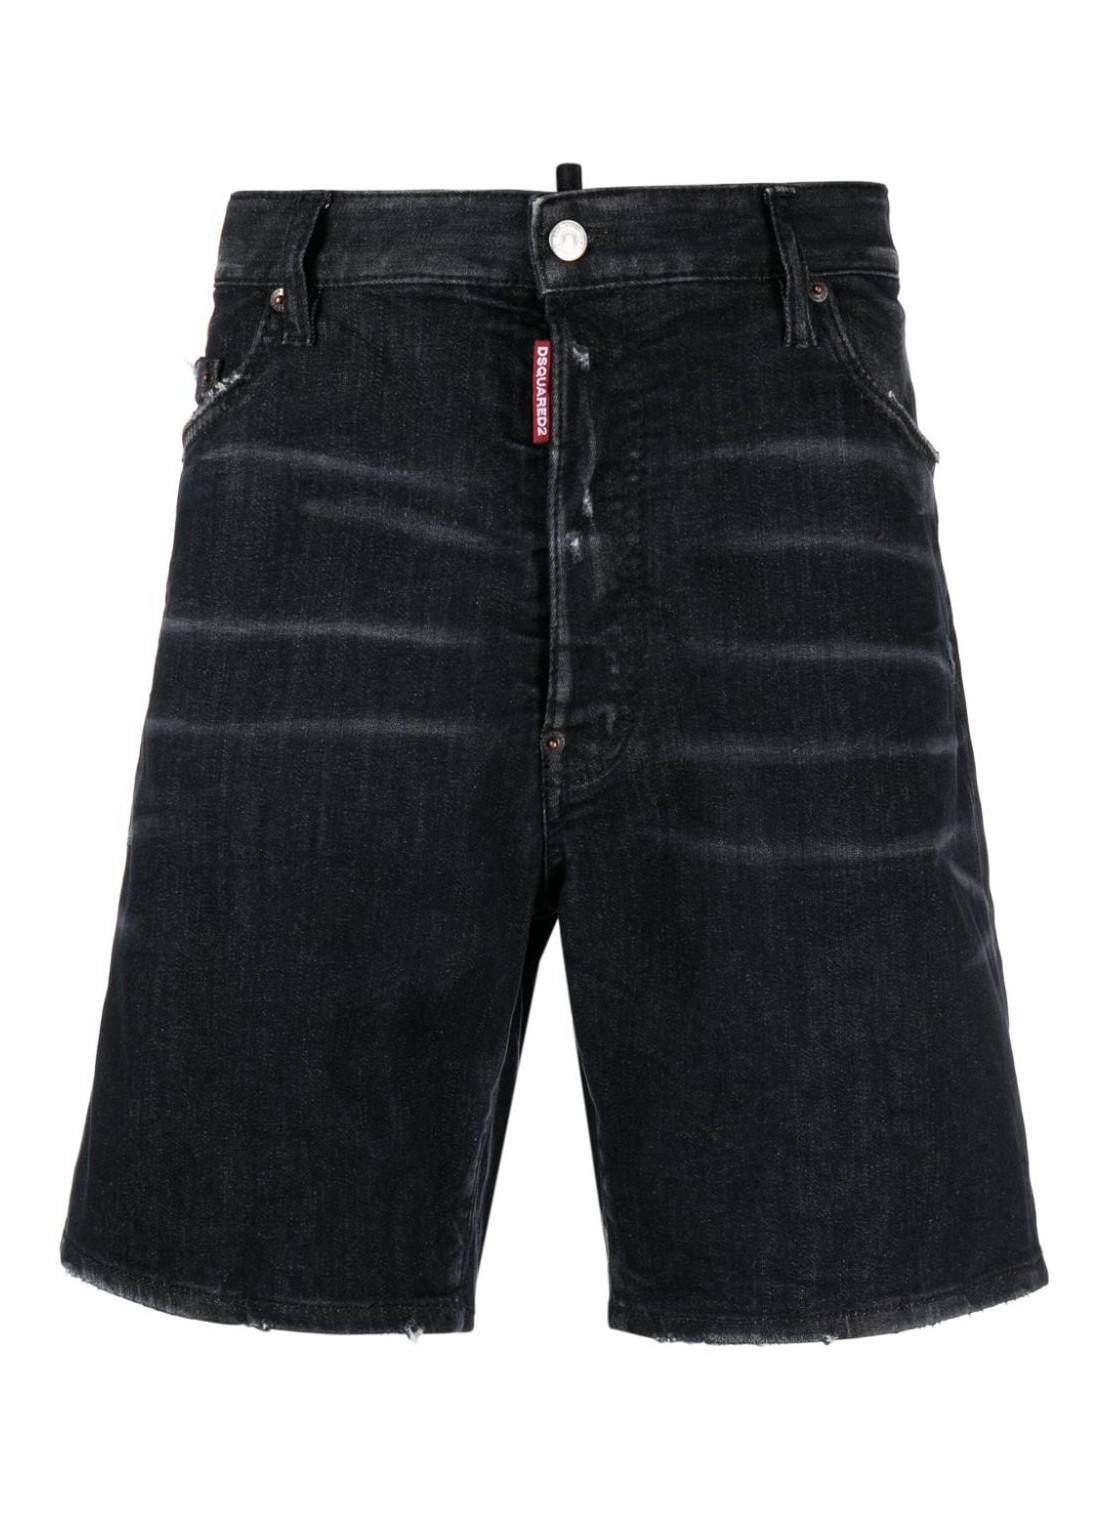 Pantalon corto dsquared short pant man marine short s74mu0826s30503 900 talla negro
 